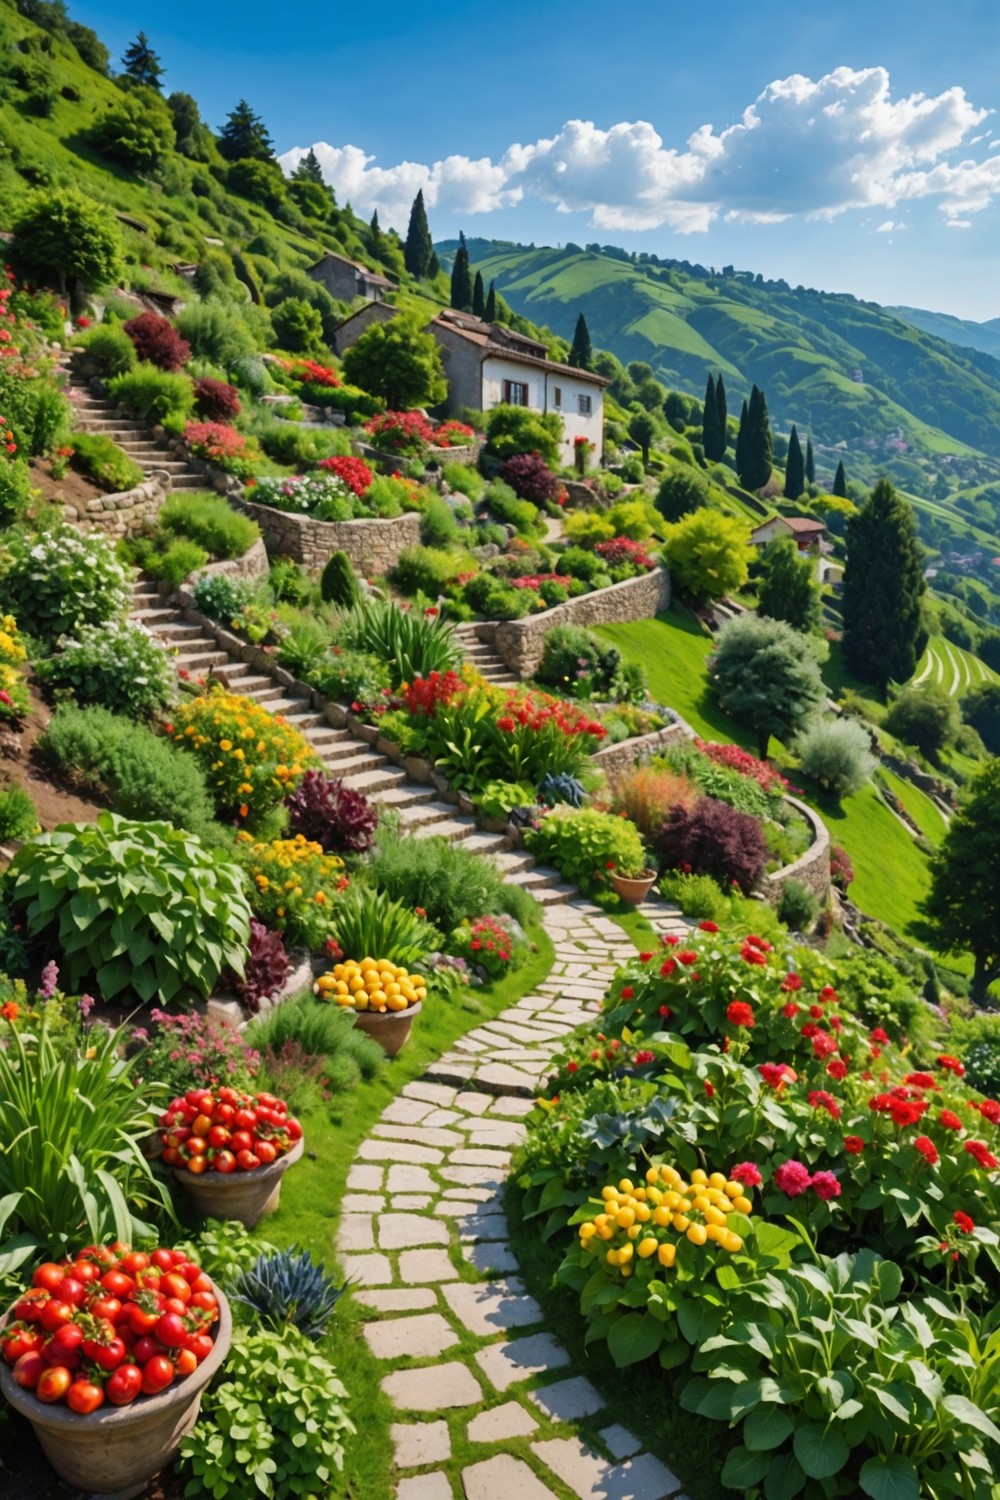 Hillside Vegetable Gardens for aProductive Landscape